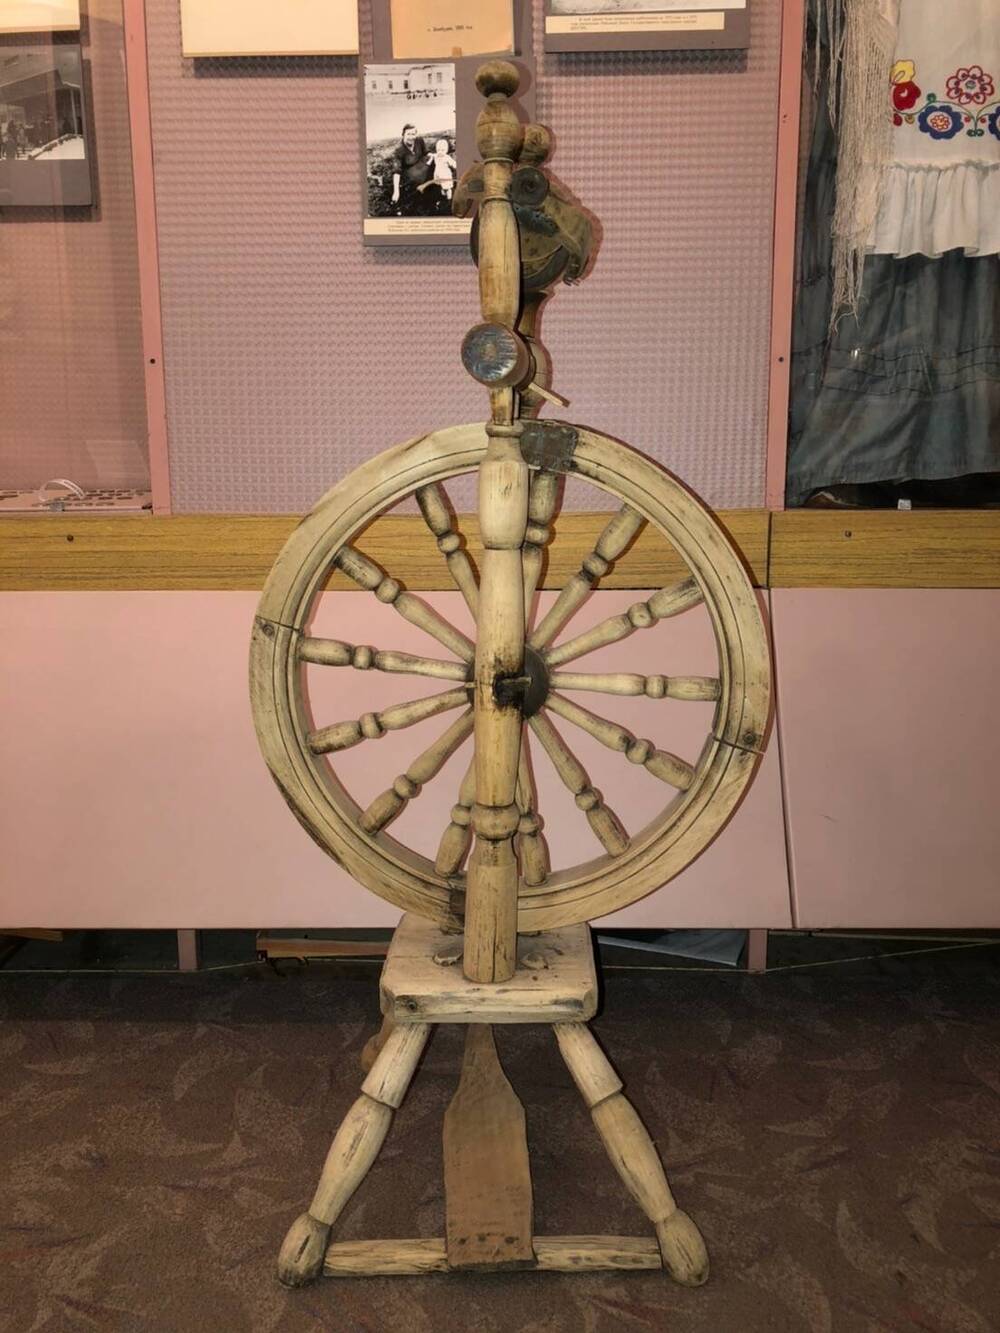 Пряха ножная, колесо деревянное 13 деревянных спиц, одна ножная деревянная педаль, стоит на 4х ножках, в рабочем состоянии середина 20в.